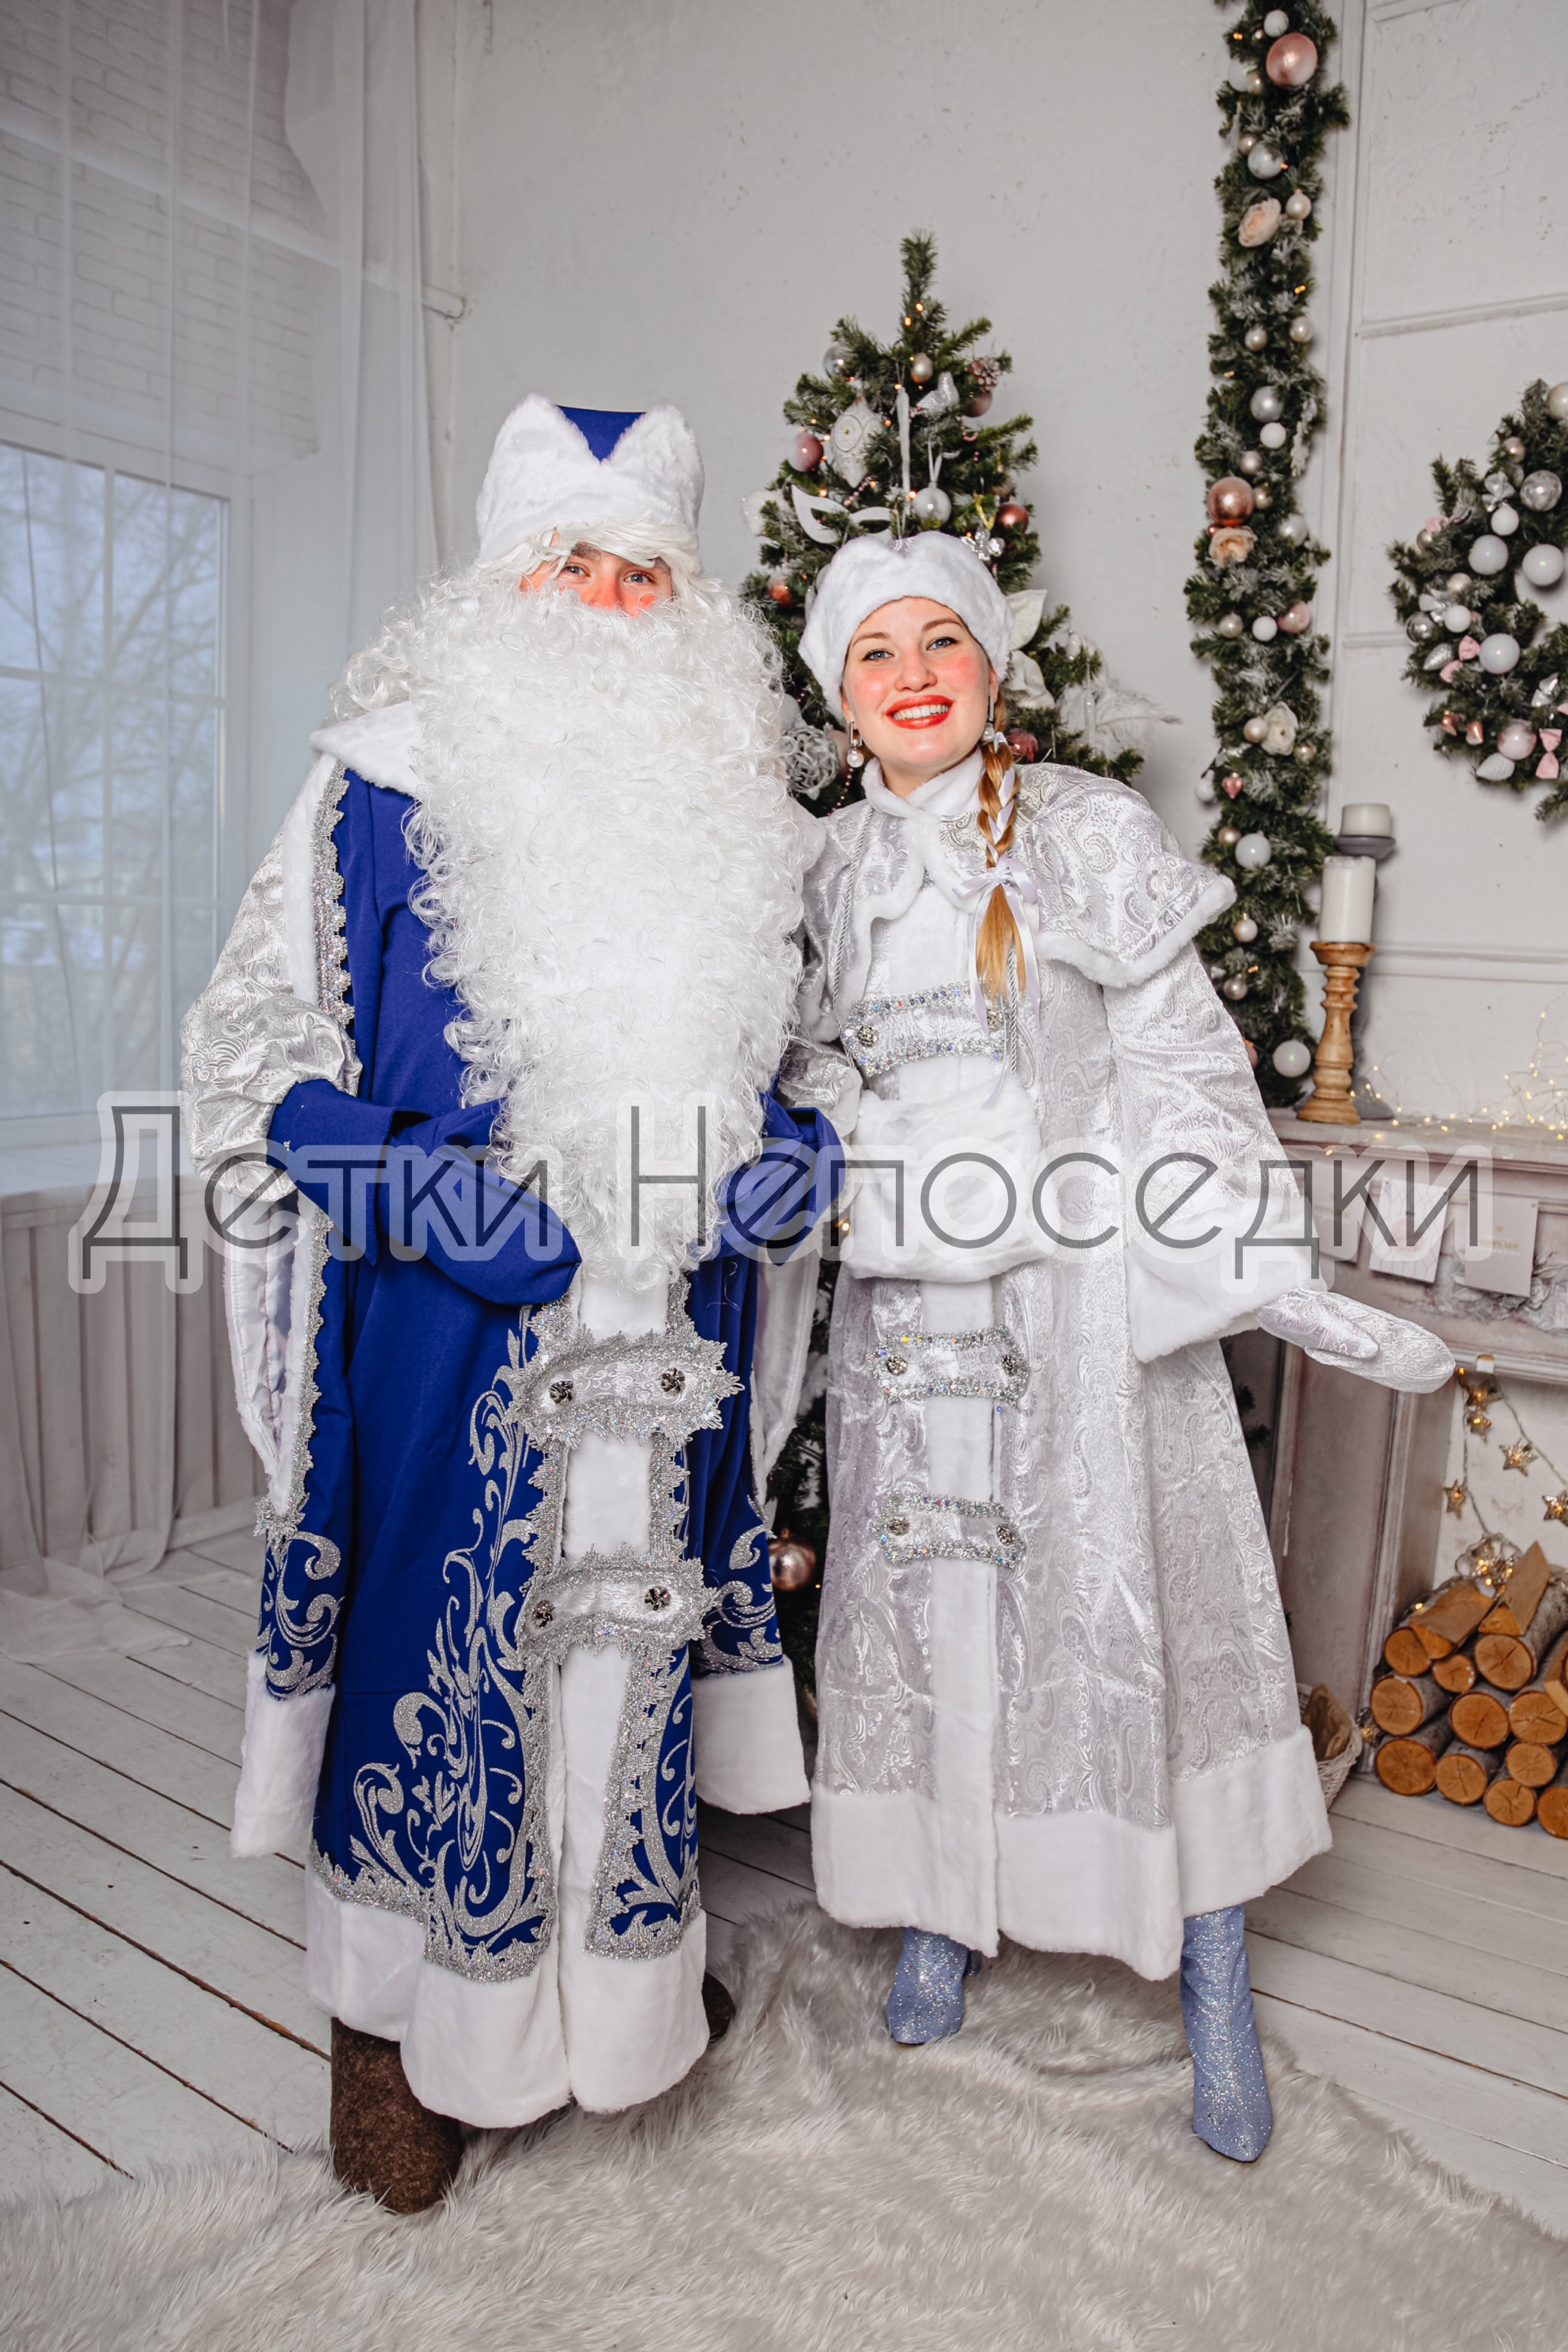 Дед Мороз и Снегурочка заказать в садик